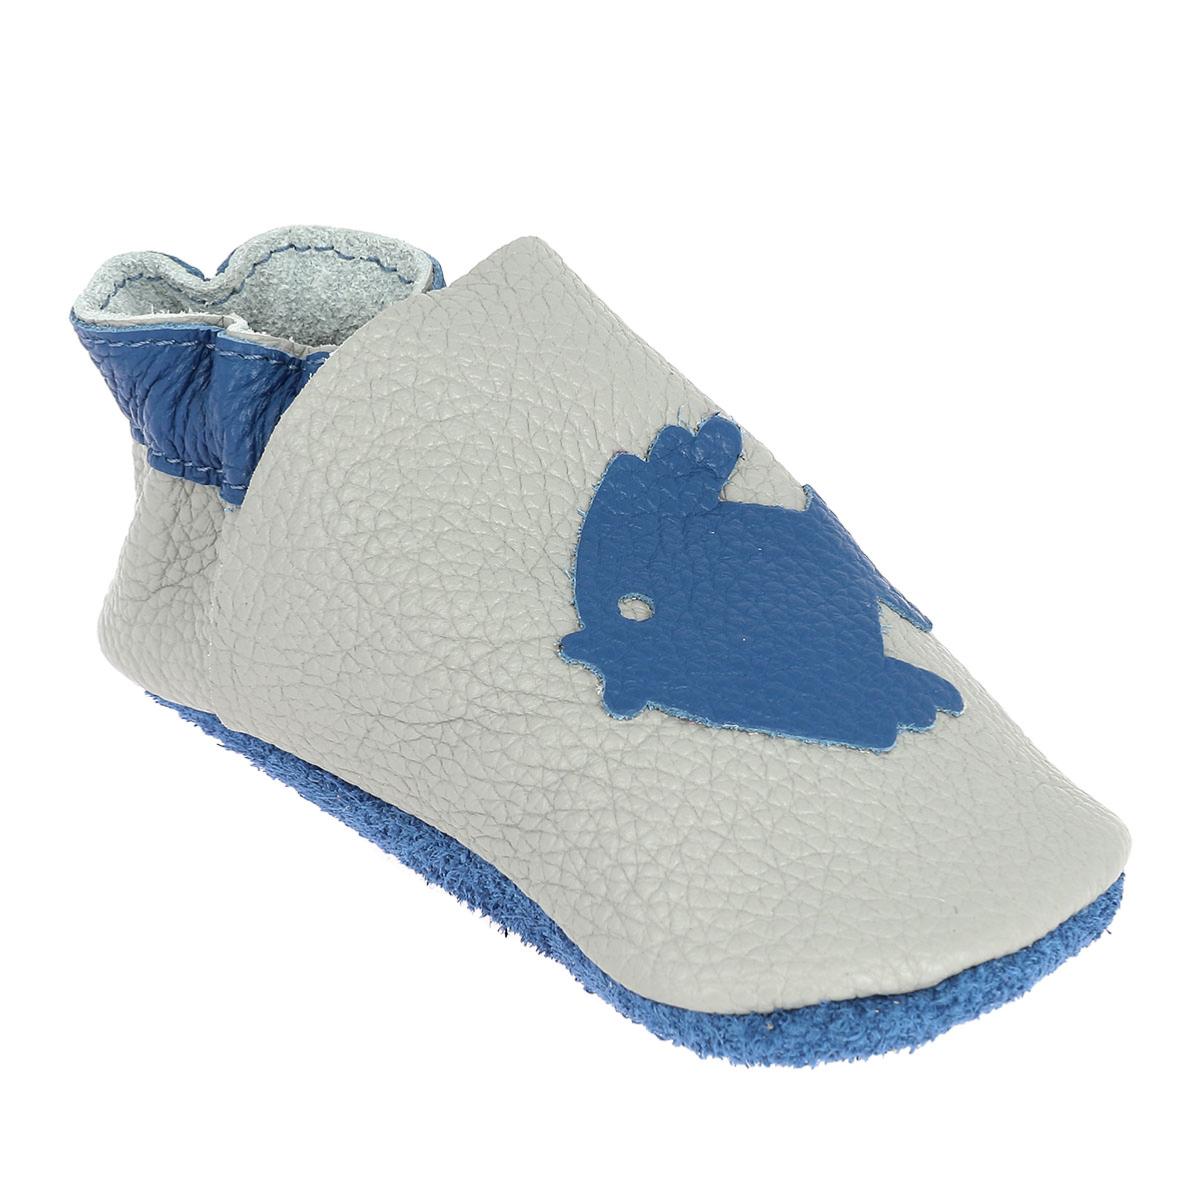 Kit chaussons en cuir pour bébé - Gris souris / Bleu océan / Poisson